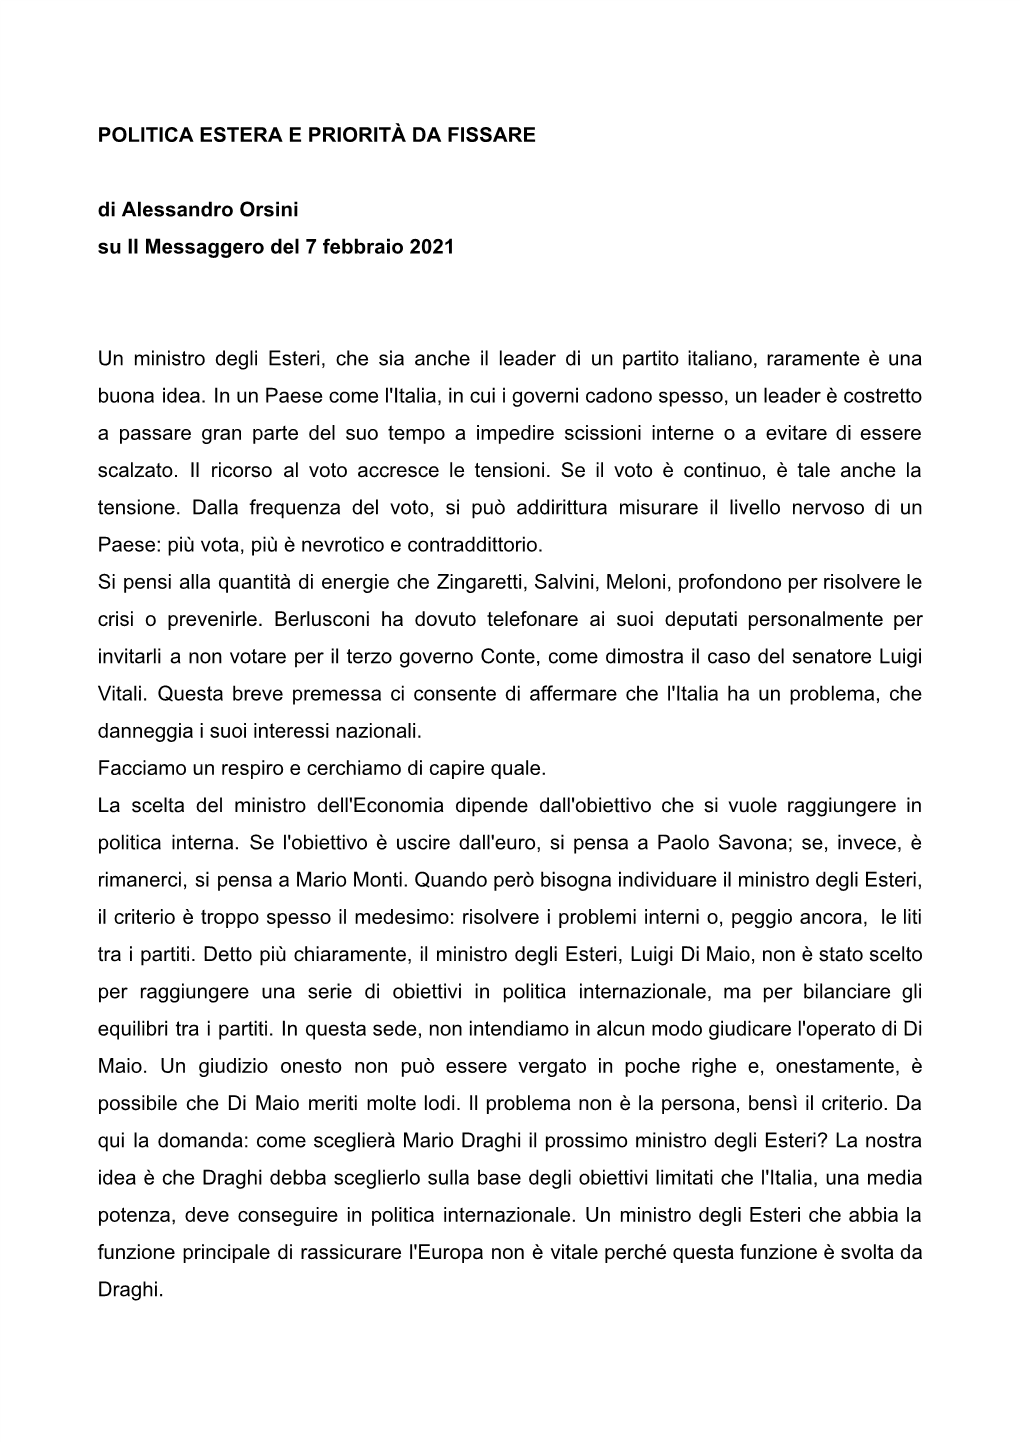 POLITICA ESTERA E PRIORITÀ DA FISSARE Di Alessandro Orsini Su Il Messaggero Del 7 Febbraio 2021